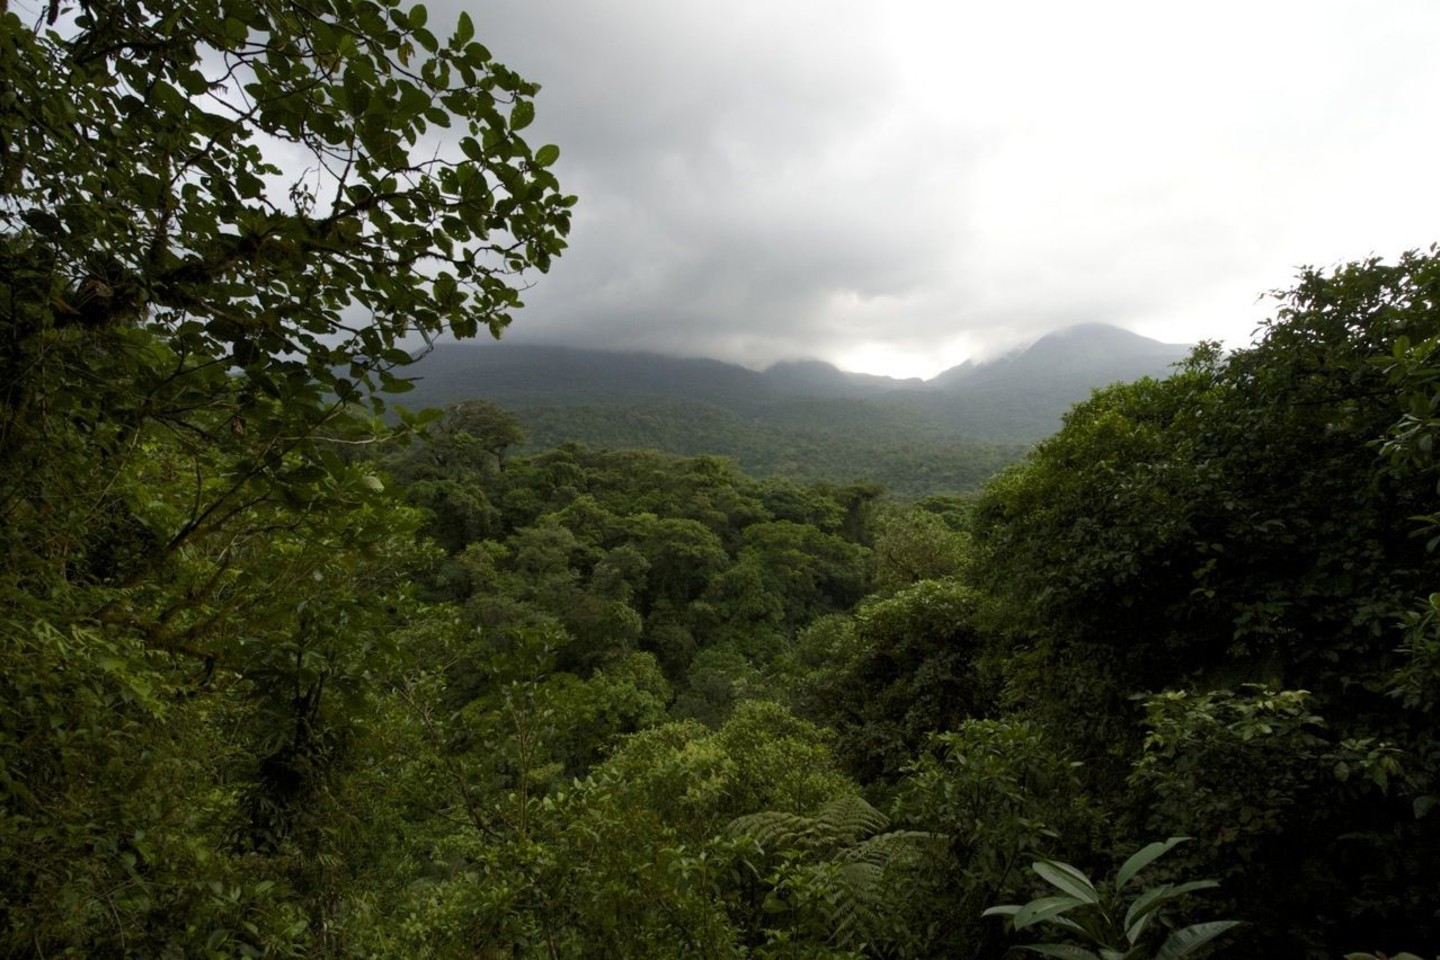  Didžioji Kosta Rikos teritorija apaugusi miškais, turtingais augalija bei gyvūnija, apie 23 proc. miškų paversti saugomais draustiniais ir nacionaliniais parkais.<br> R. Anusausko nuotr.